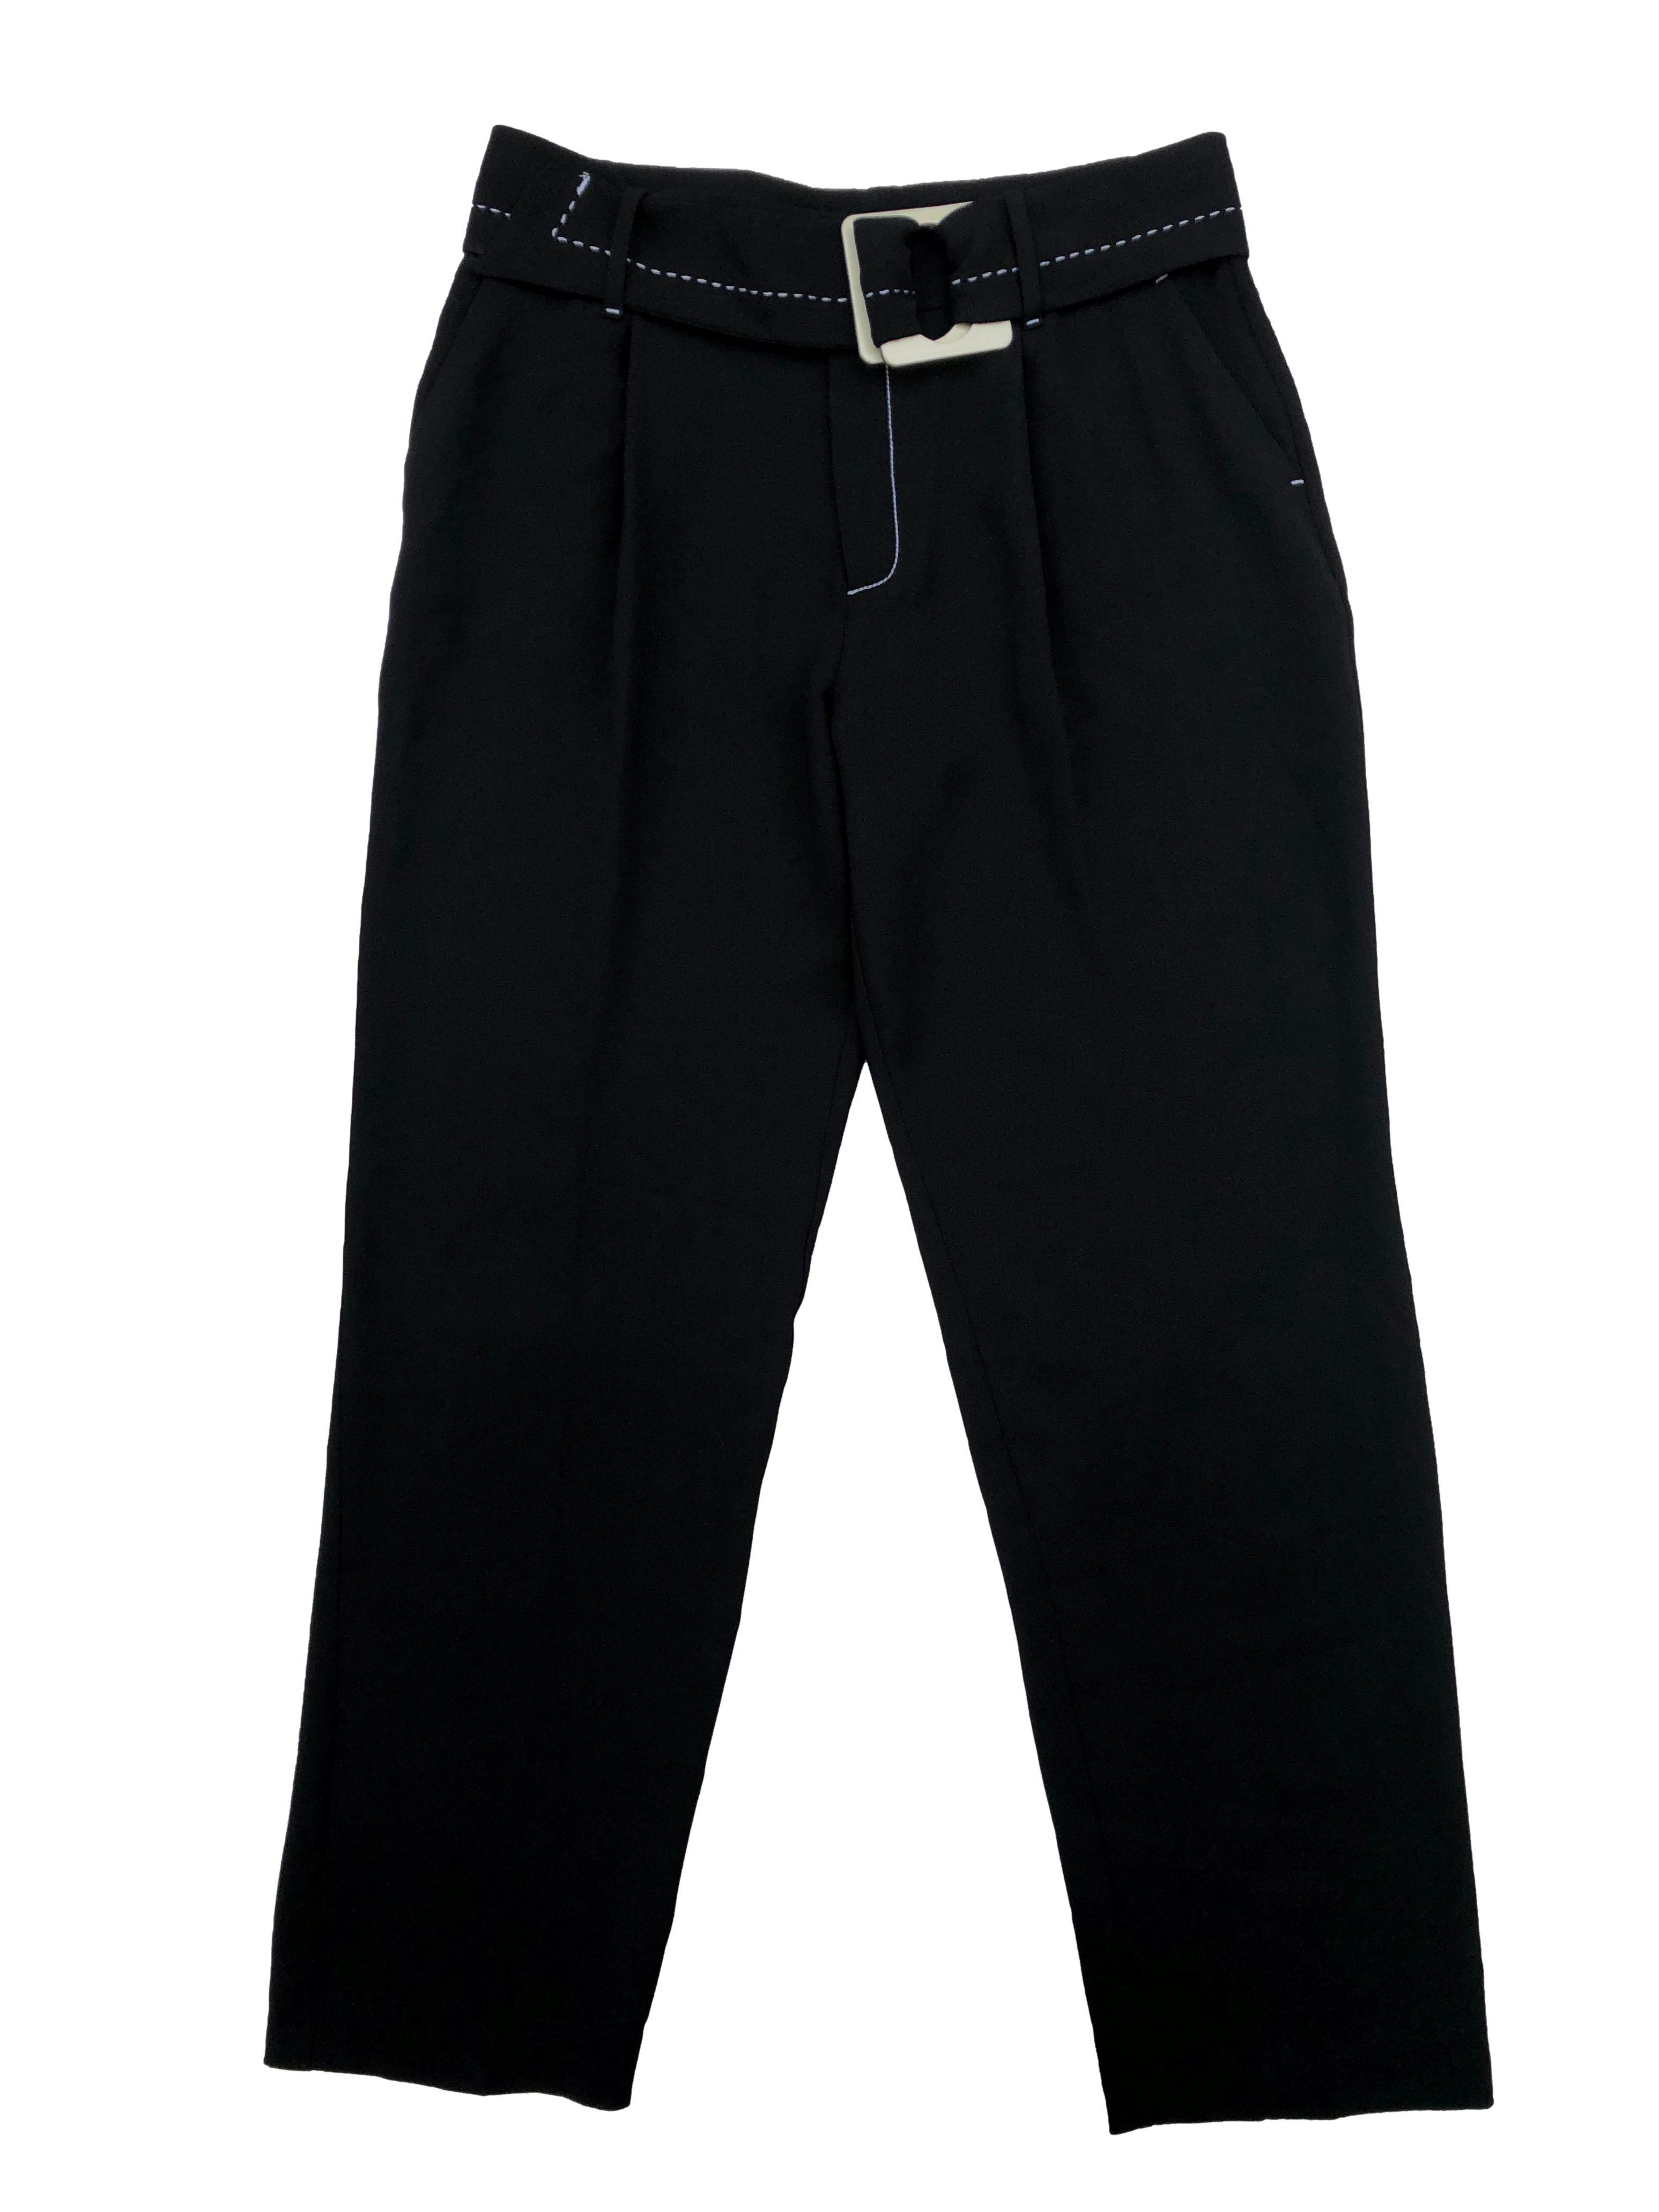 Pantalón formal Mango, con pliegues y cinturón, detalles de pespuntes en blanco, tiene bolsillos. Cintura 80cm, Tiro 30cm Largo 107cm